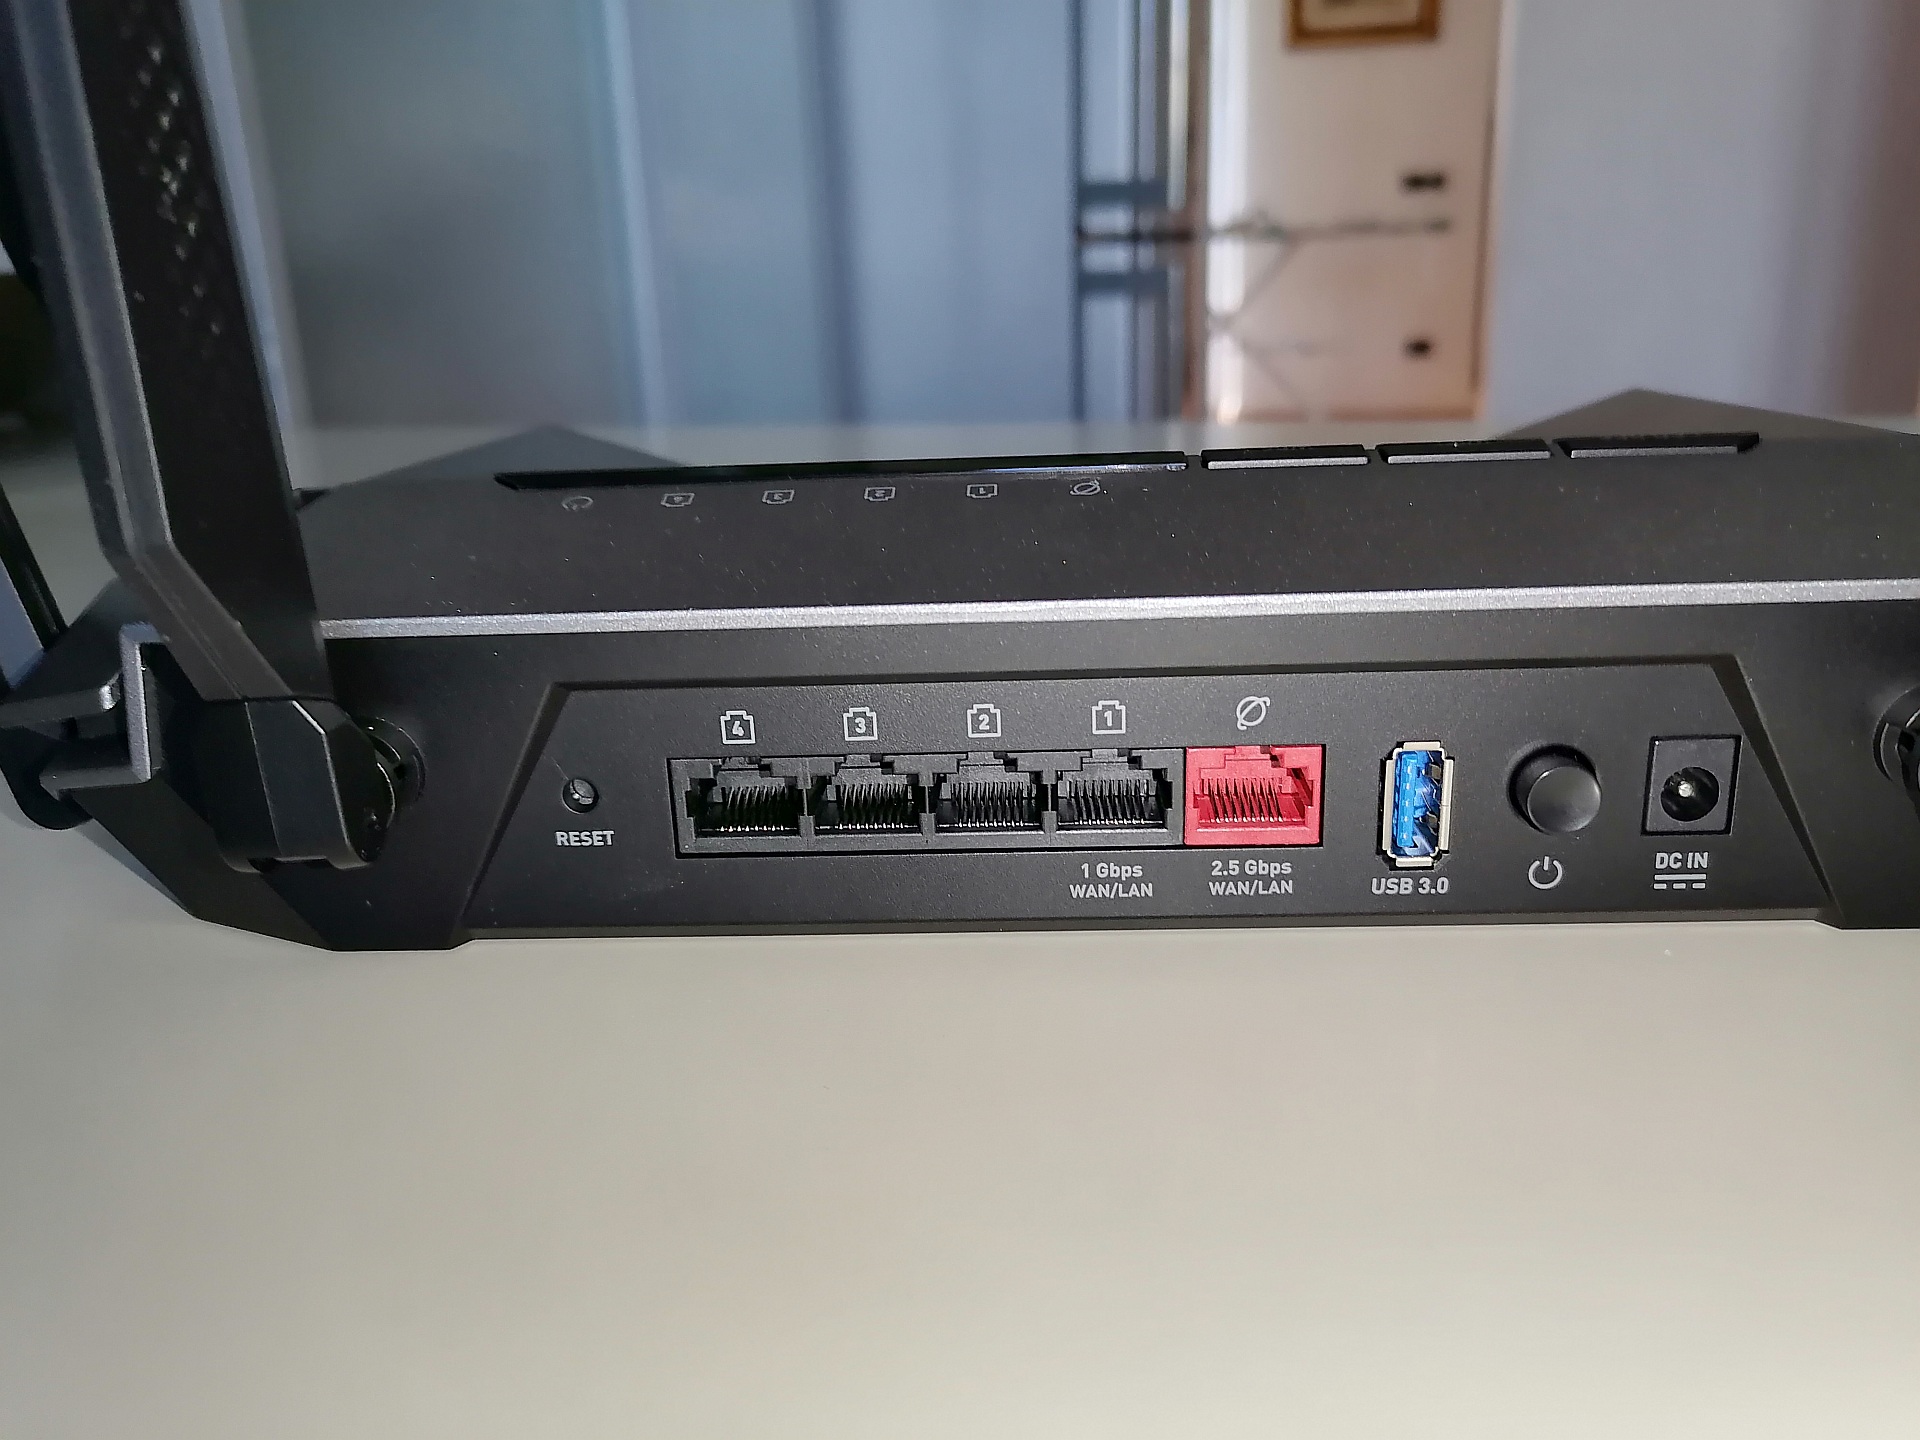 MSI RadiX AX6600 Recensione: il primo router gaming Wi-Fi 6 Tri-Band di MSI